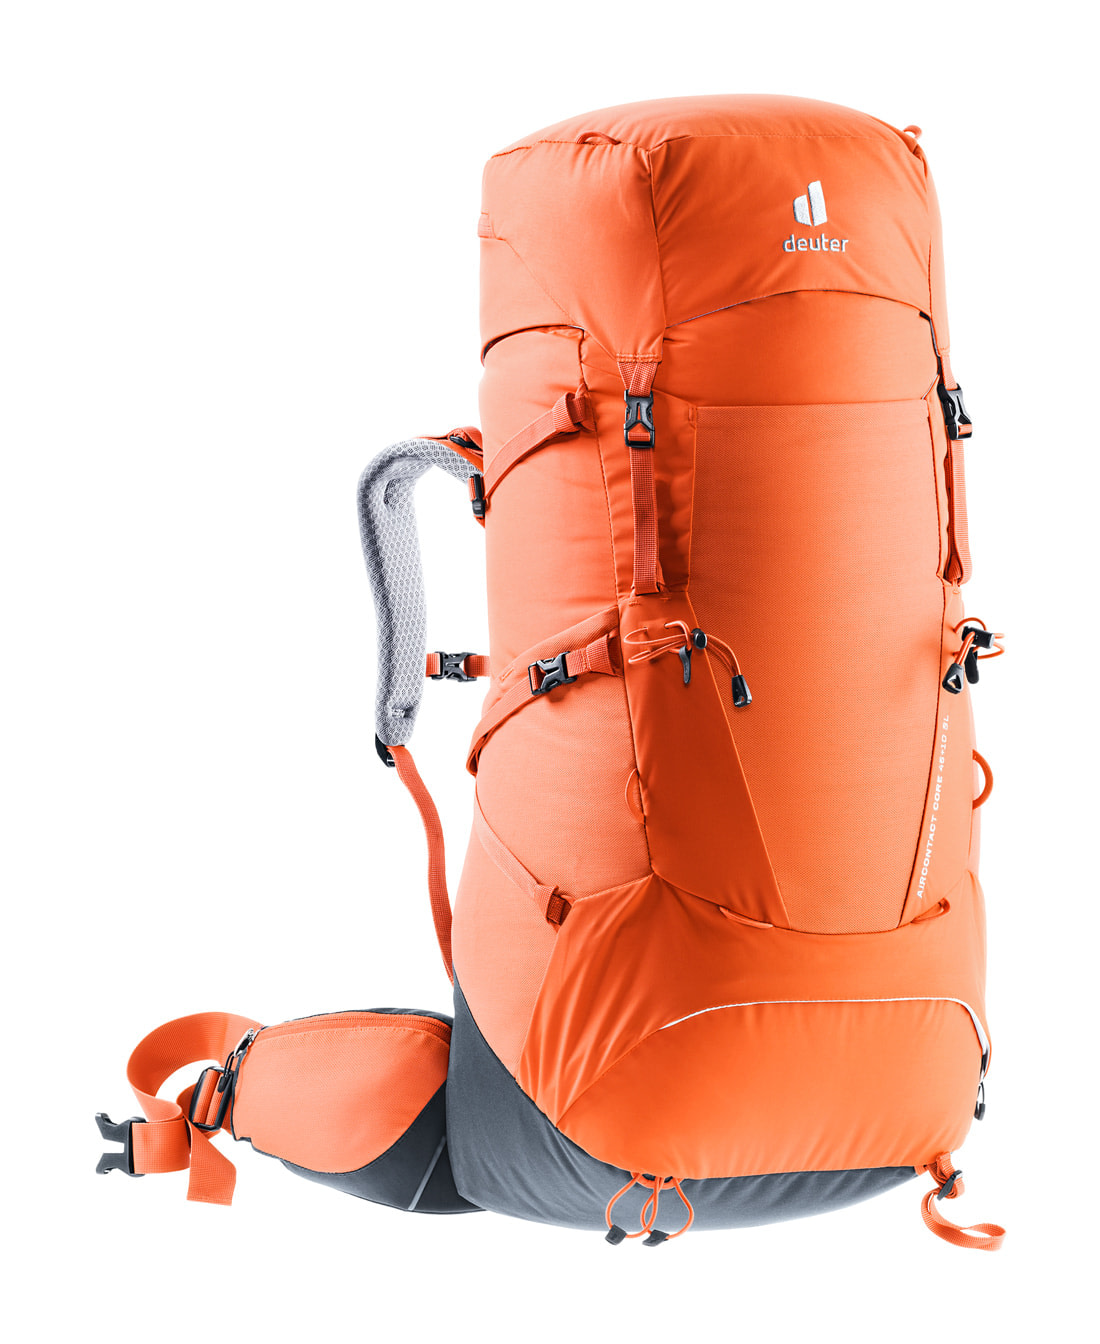 Best hiking backpack brand